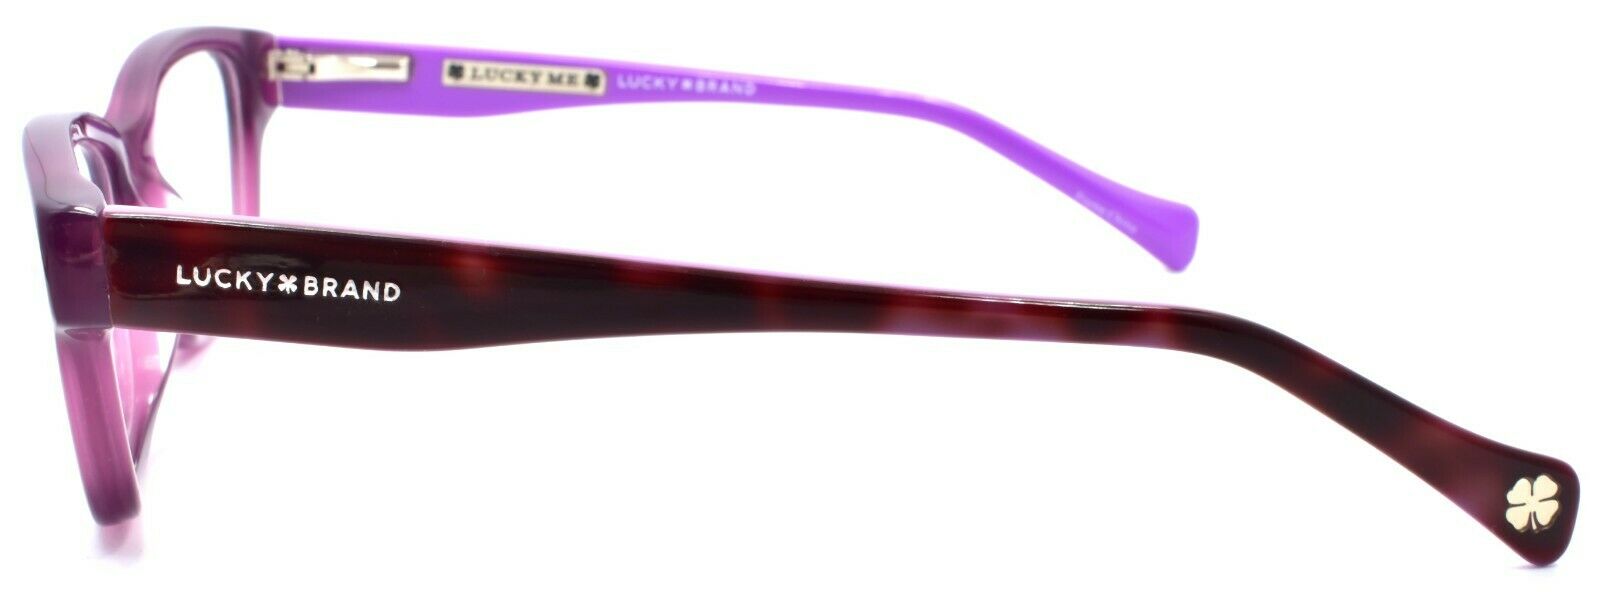 3-LUCKY BRAND D705 Kids Girls Eyeglasses Frames 46-16-125 Purple-751286295672-IKSpecs